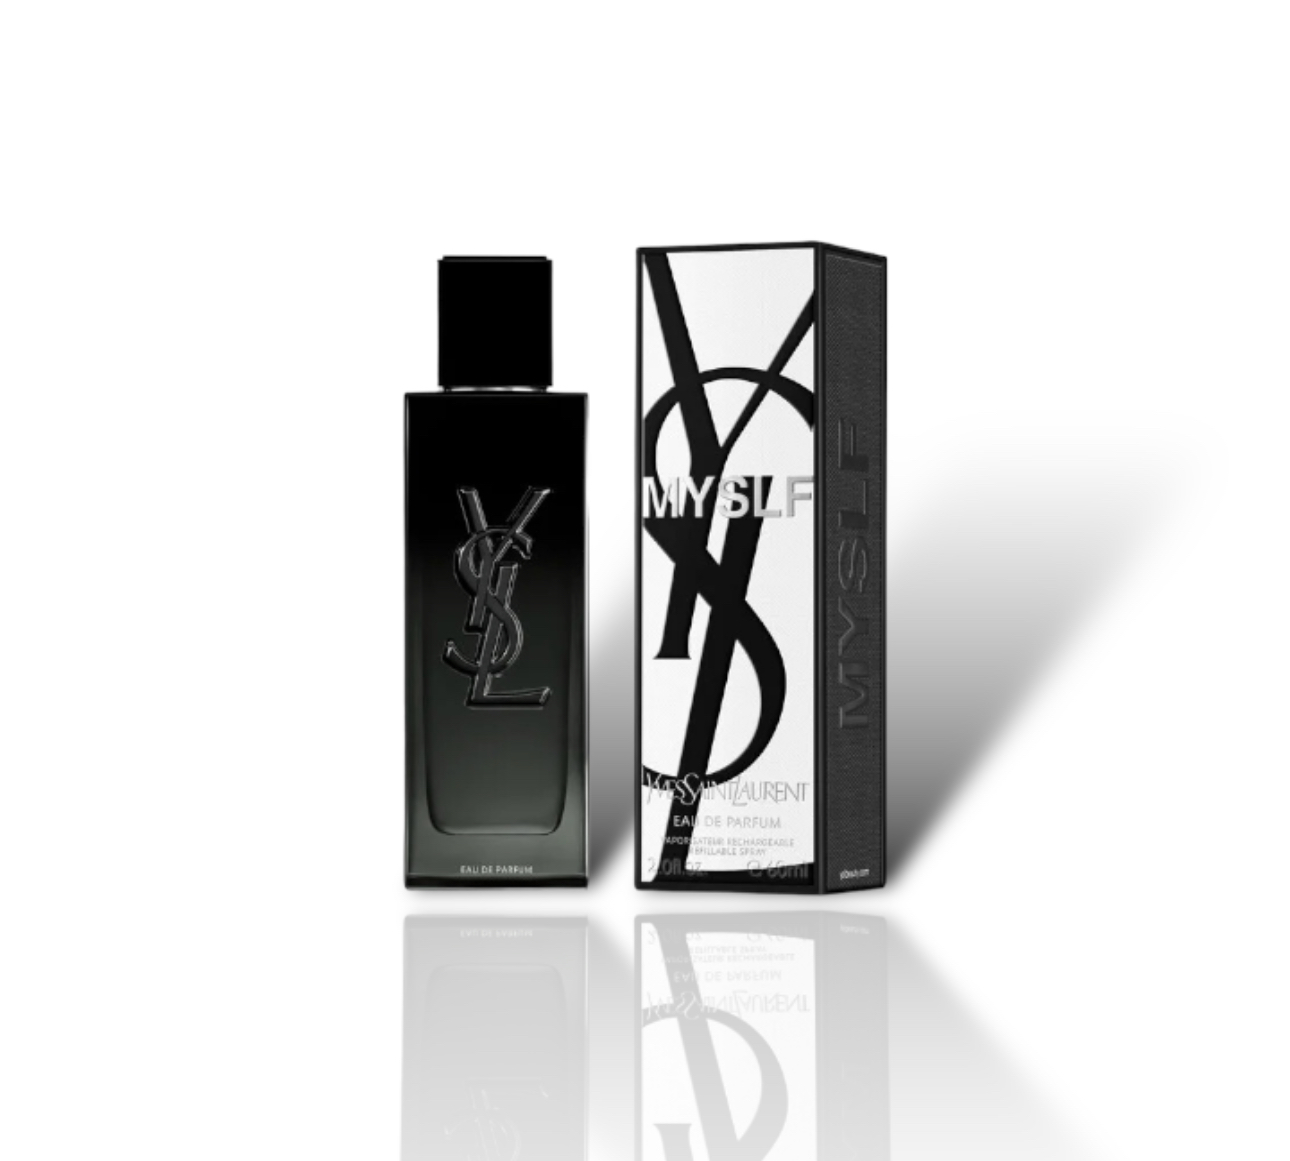 Myslf Eau de Parfum - Fragrance Galore